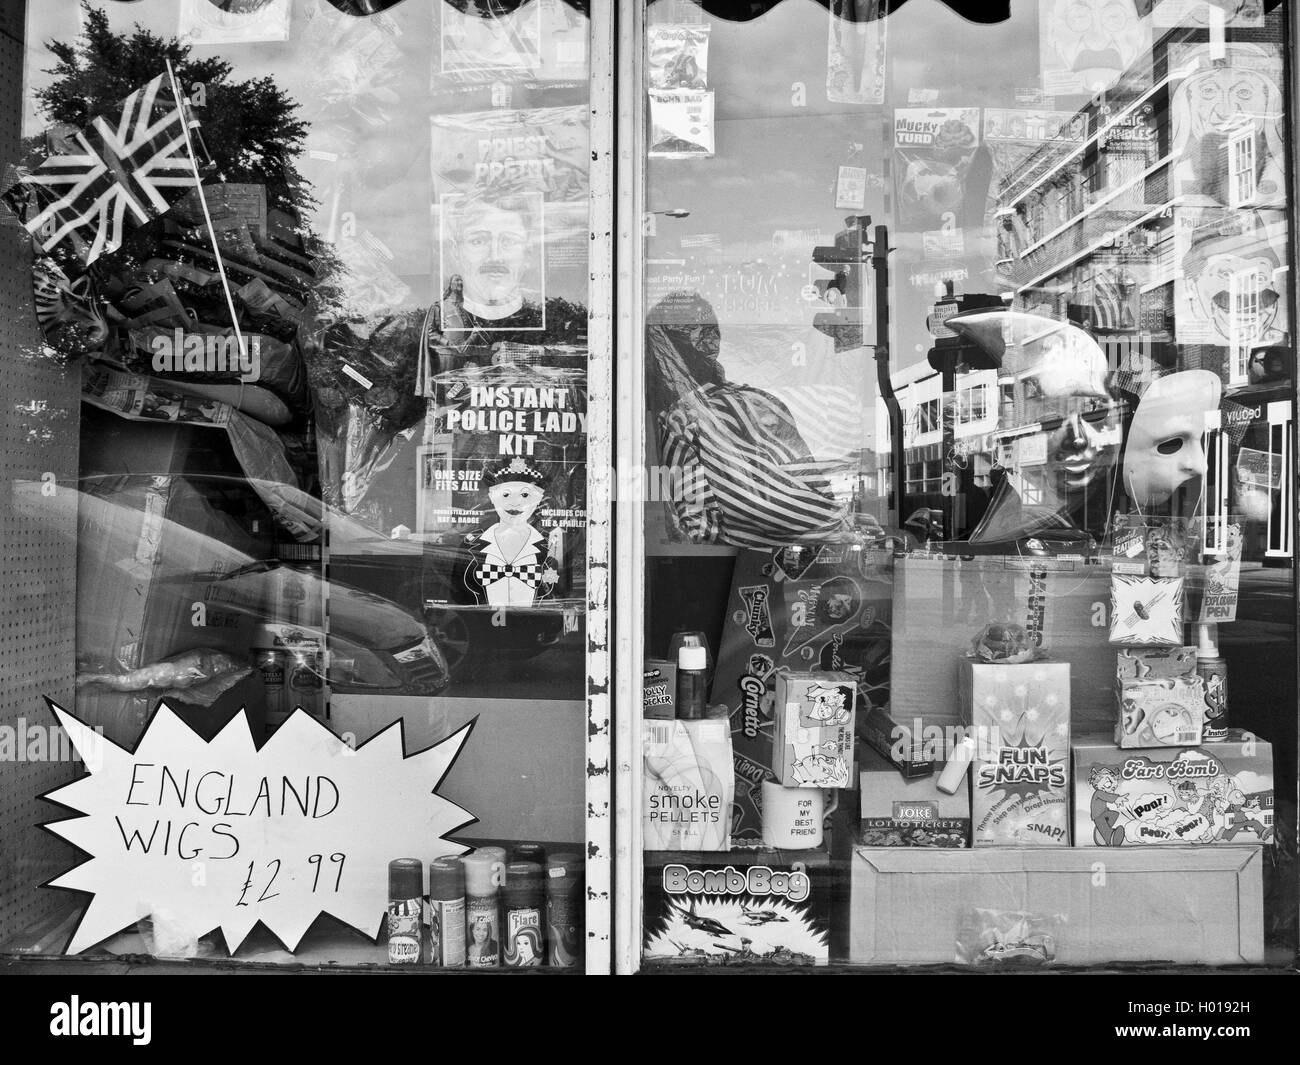 Fenster-Reflexionen in einem englischen Witz-Shop. Stockfoto